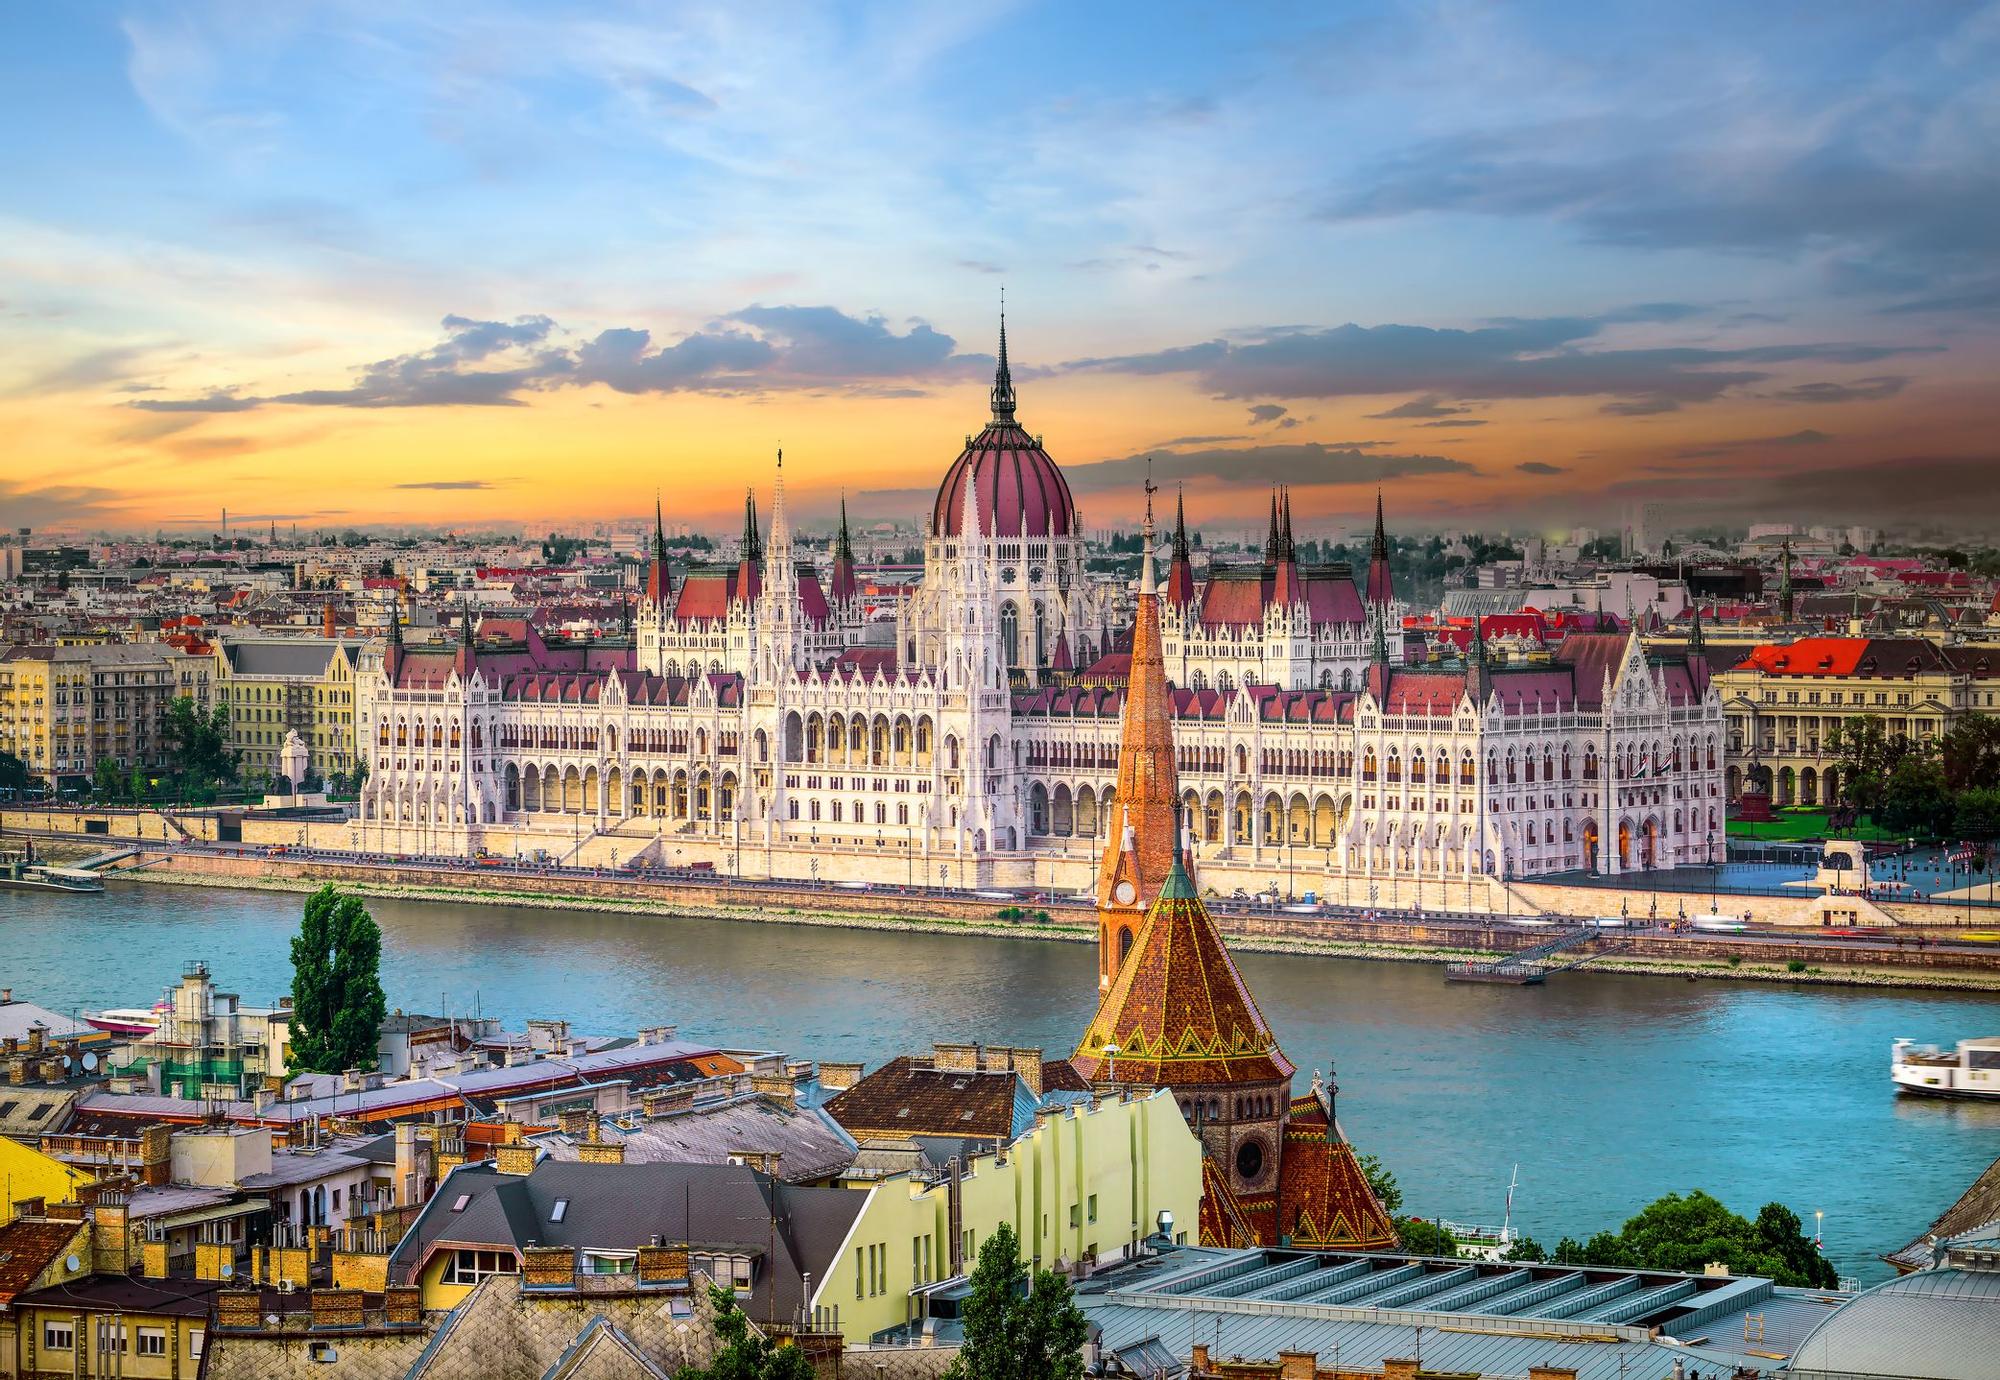 El parlamento en Budapest es uno de los monumentos má simportantes de la capital de Hungría